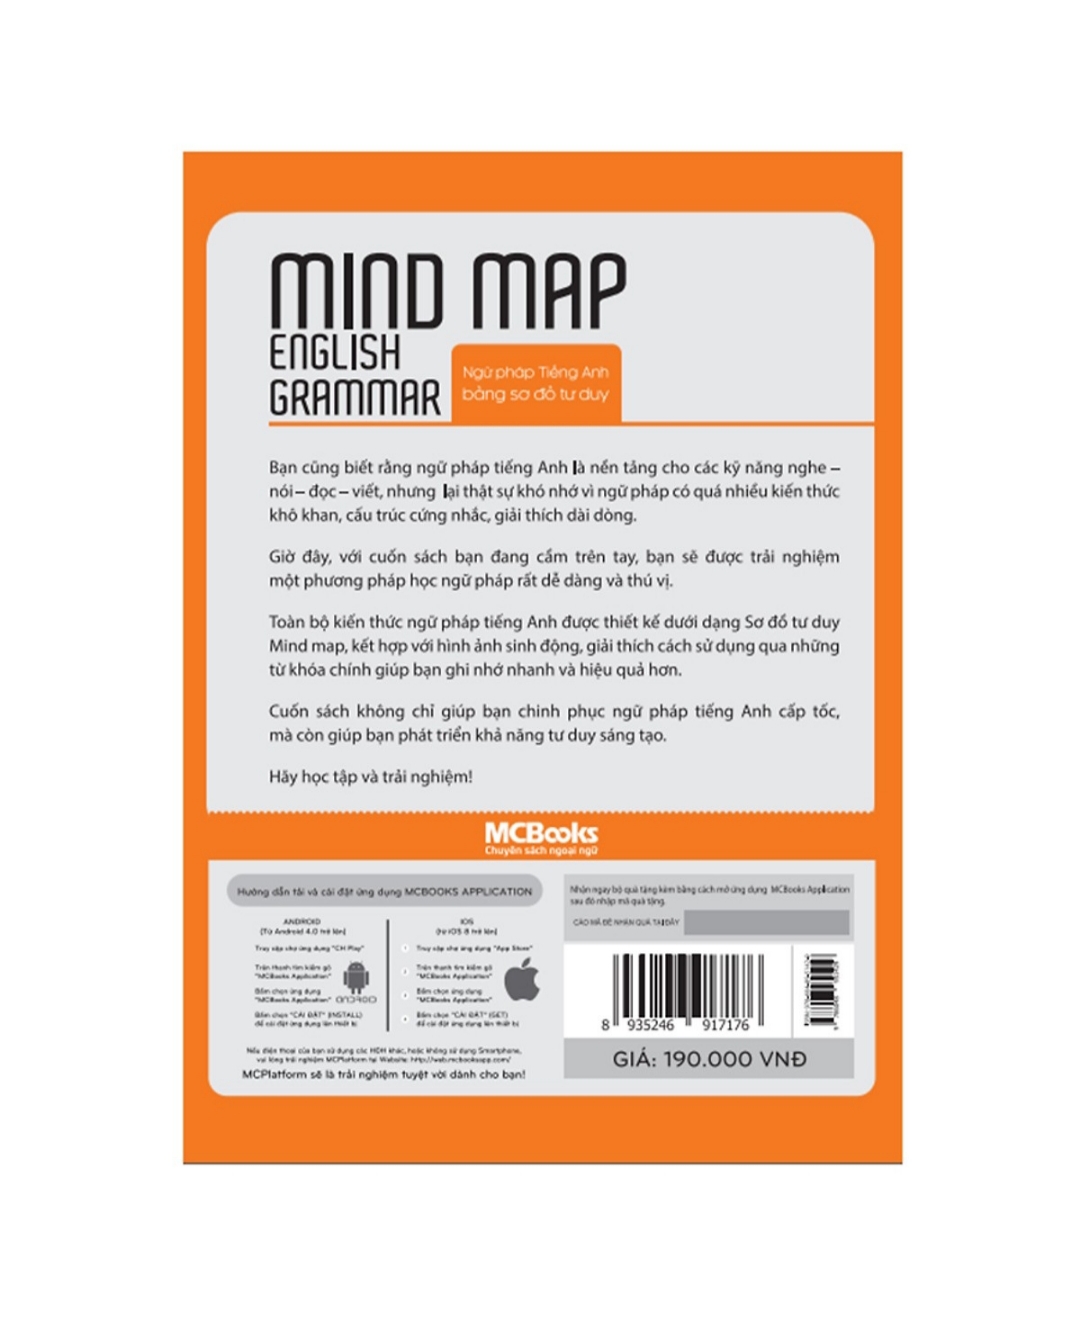 Mind Map - Ngữ pháp tiếng Anh bằng sơ đồ tư duy ( tặng bút bi )